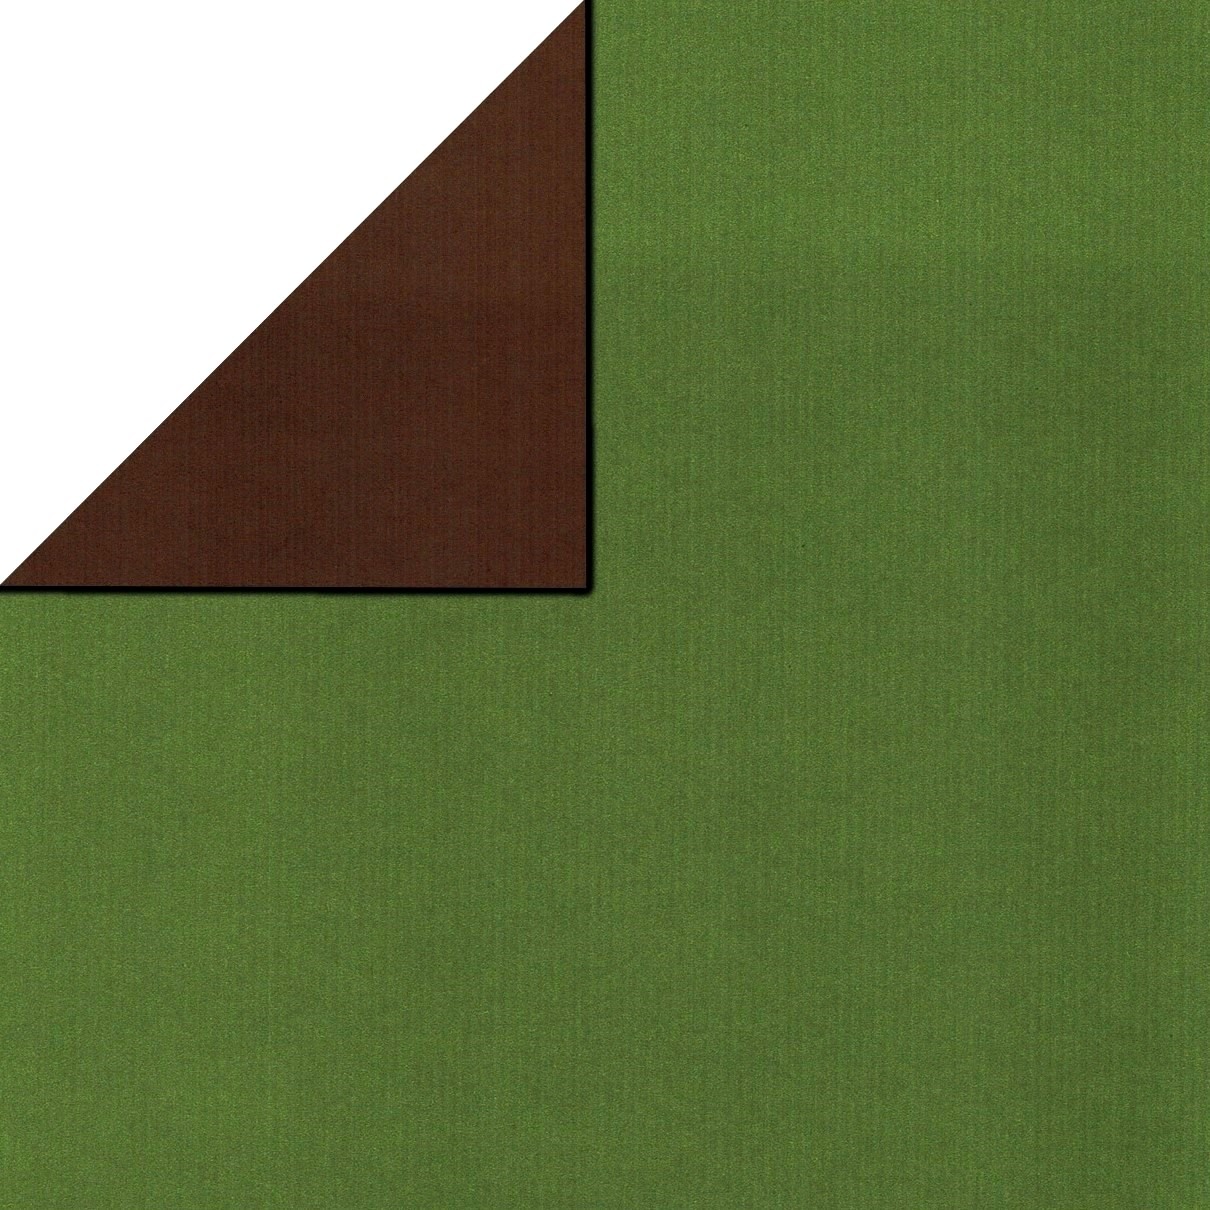 Inpakpapier voorzijde uni olijfgroen, achterzijde uni bruin op sterk geribbeld mat papier.
 